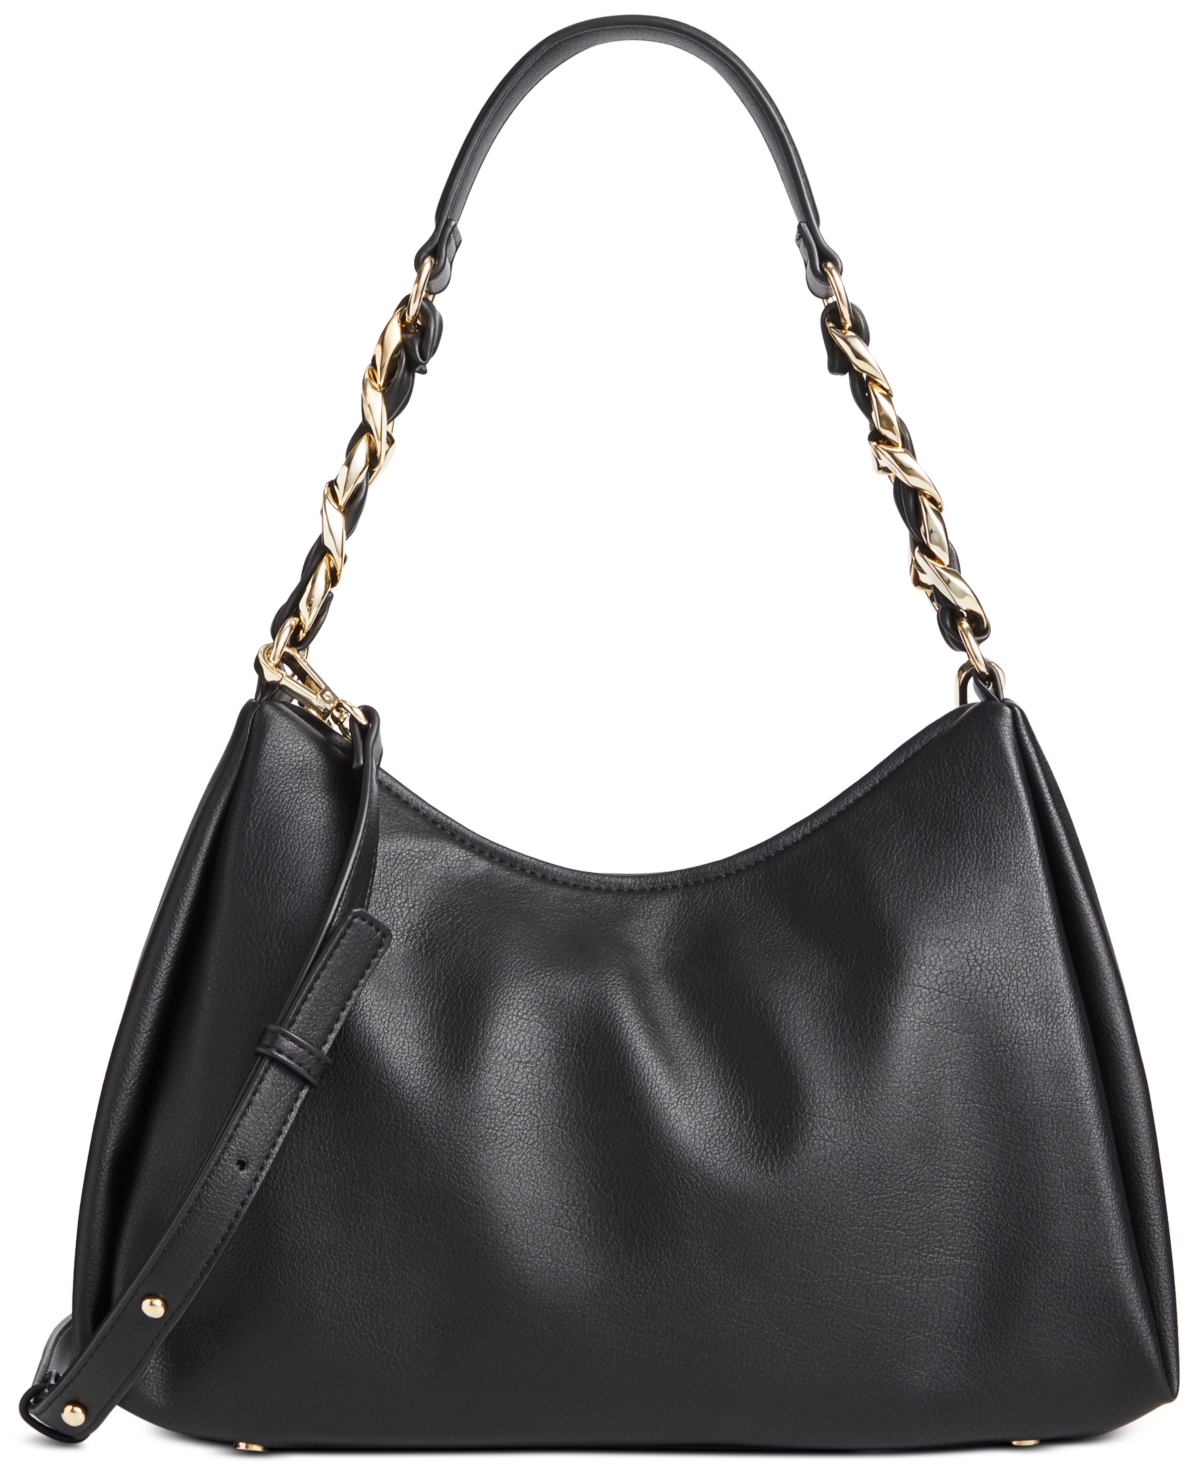 Nattah Hobo Bag, Created for Macy's - Black